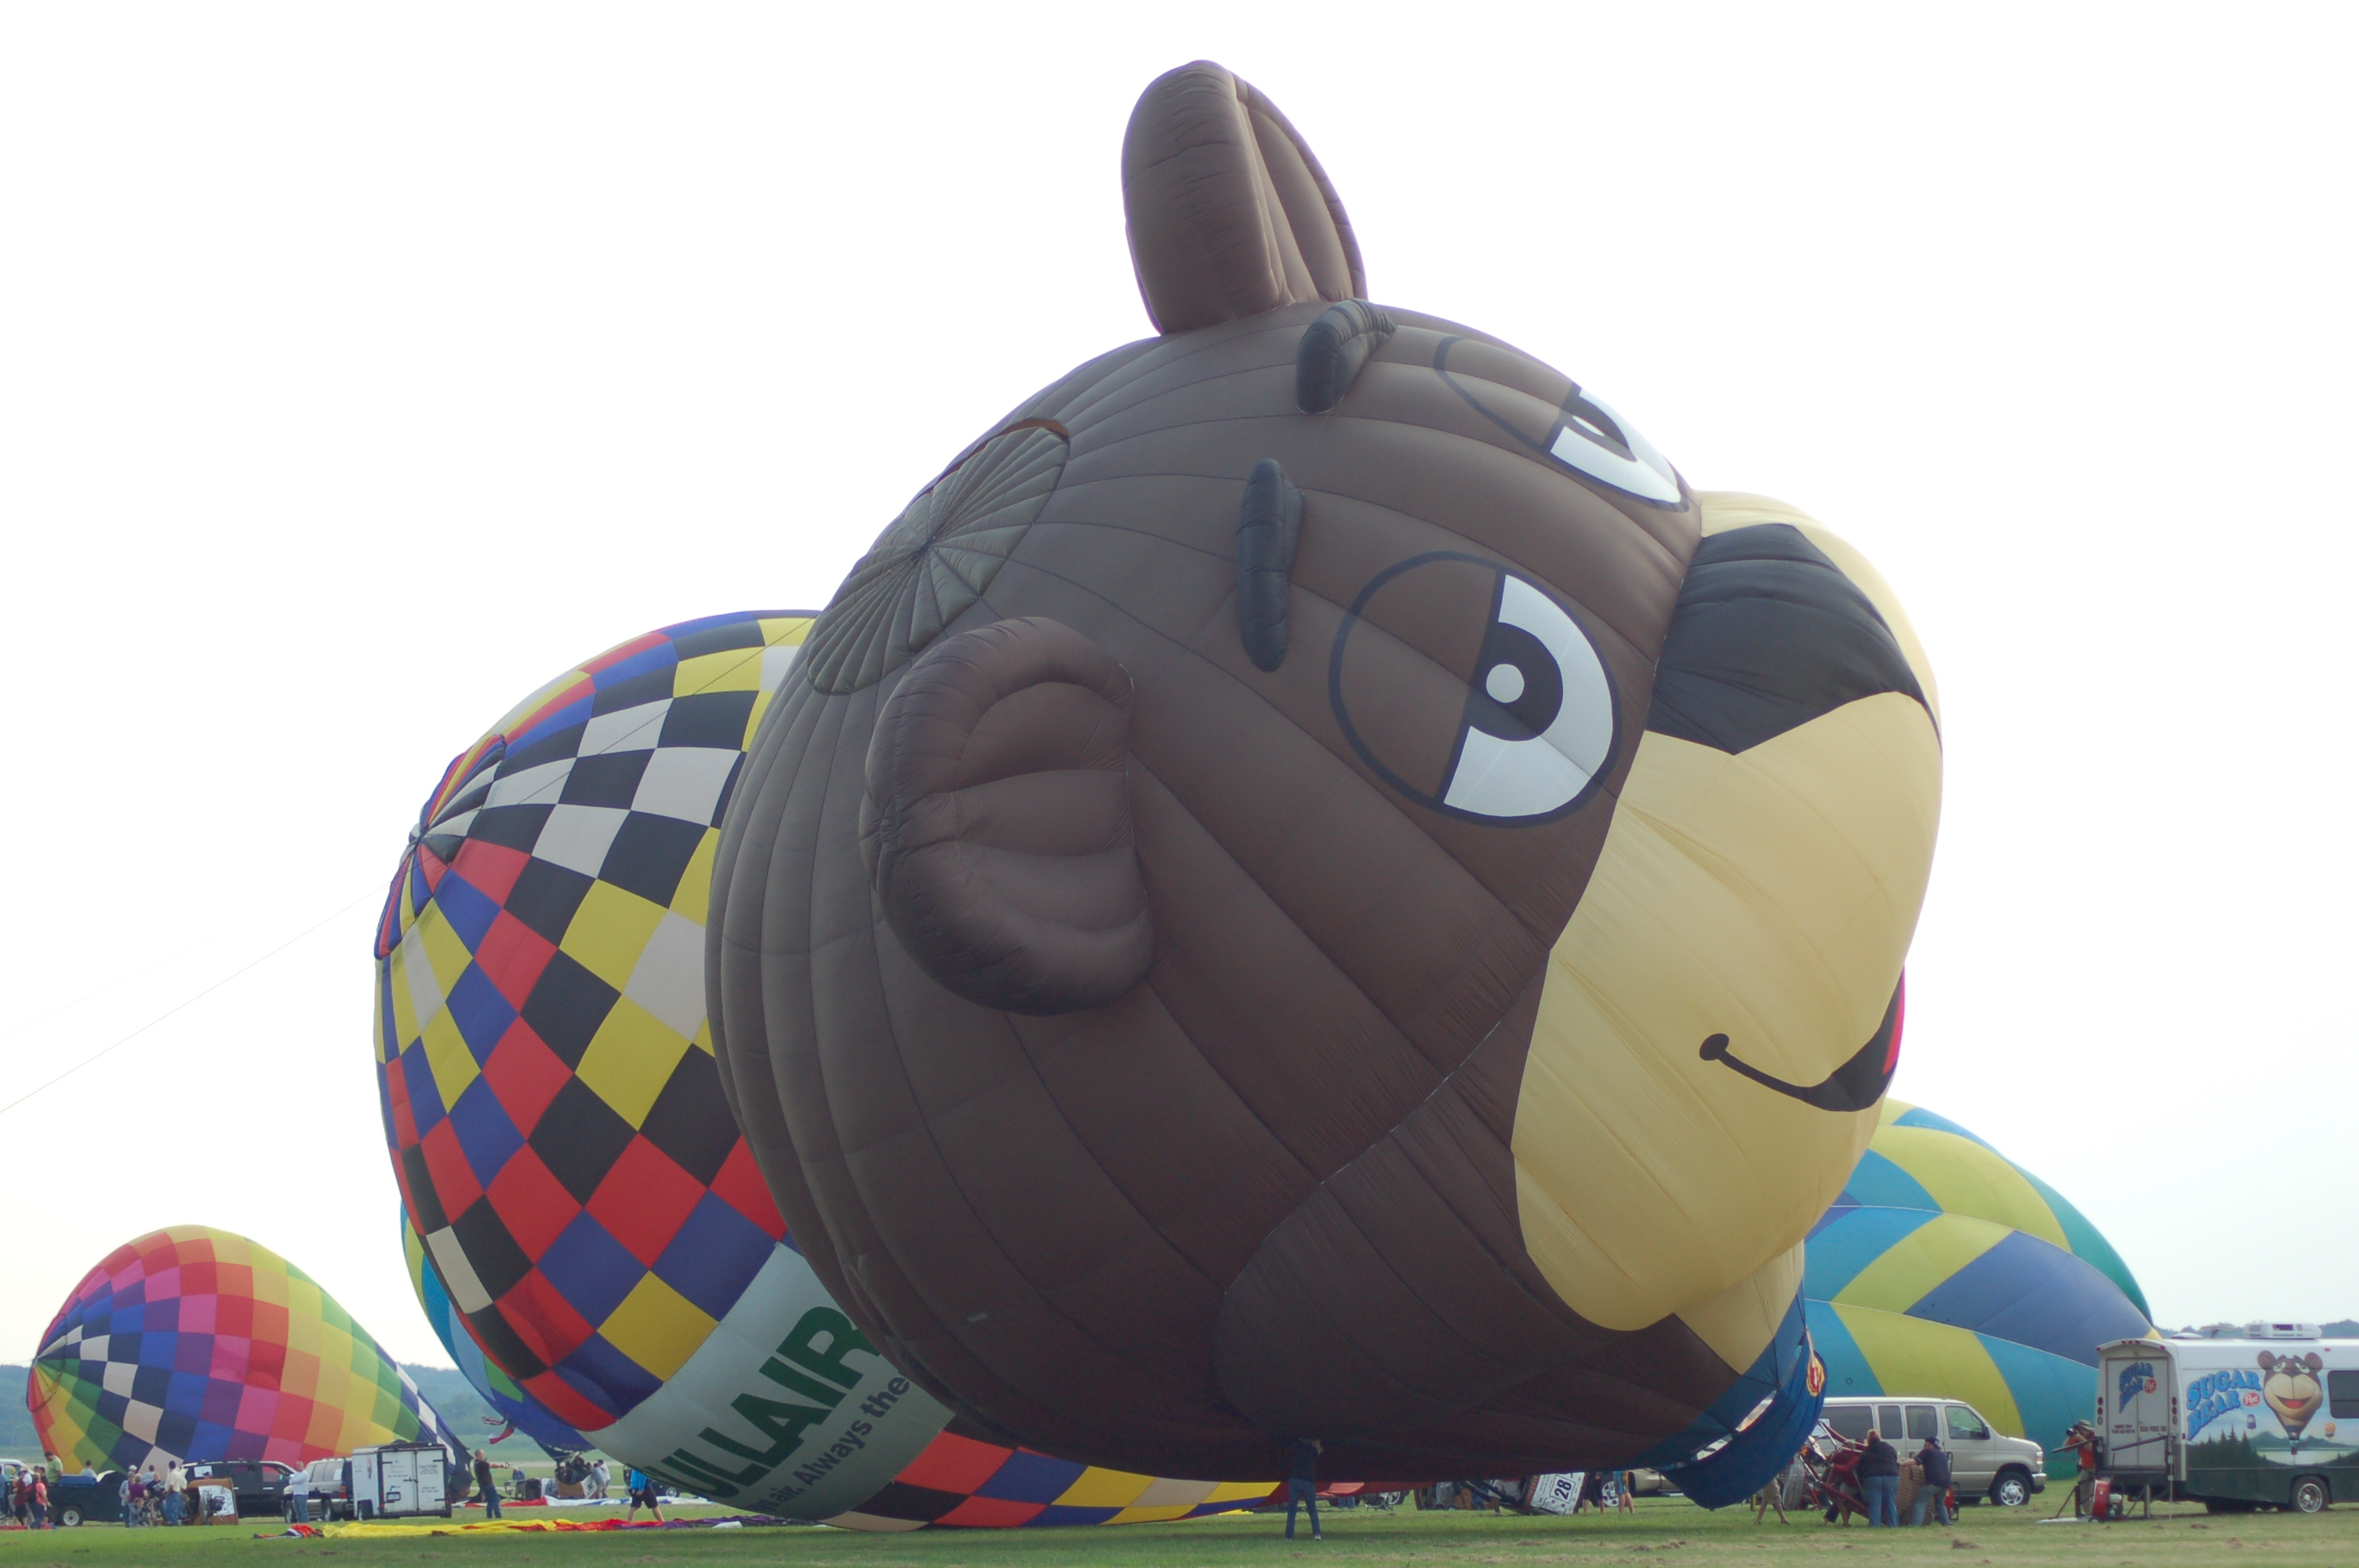 Sugar Bear Balloon Launch Battle Creek